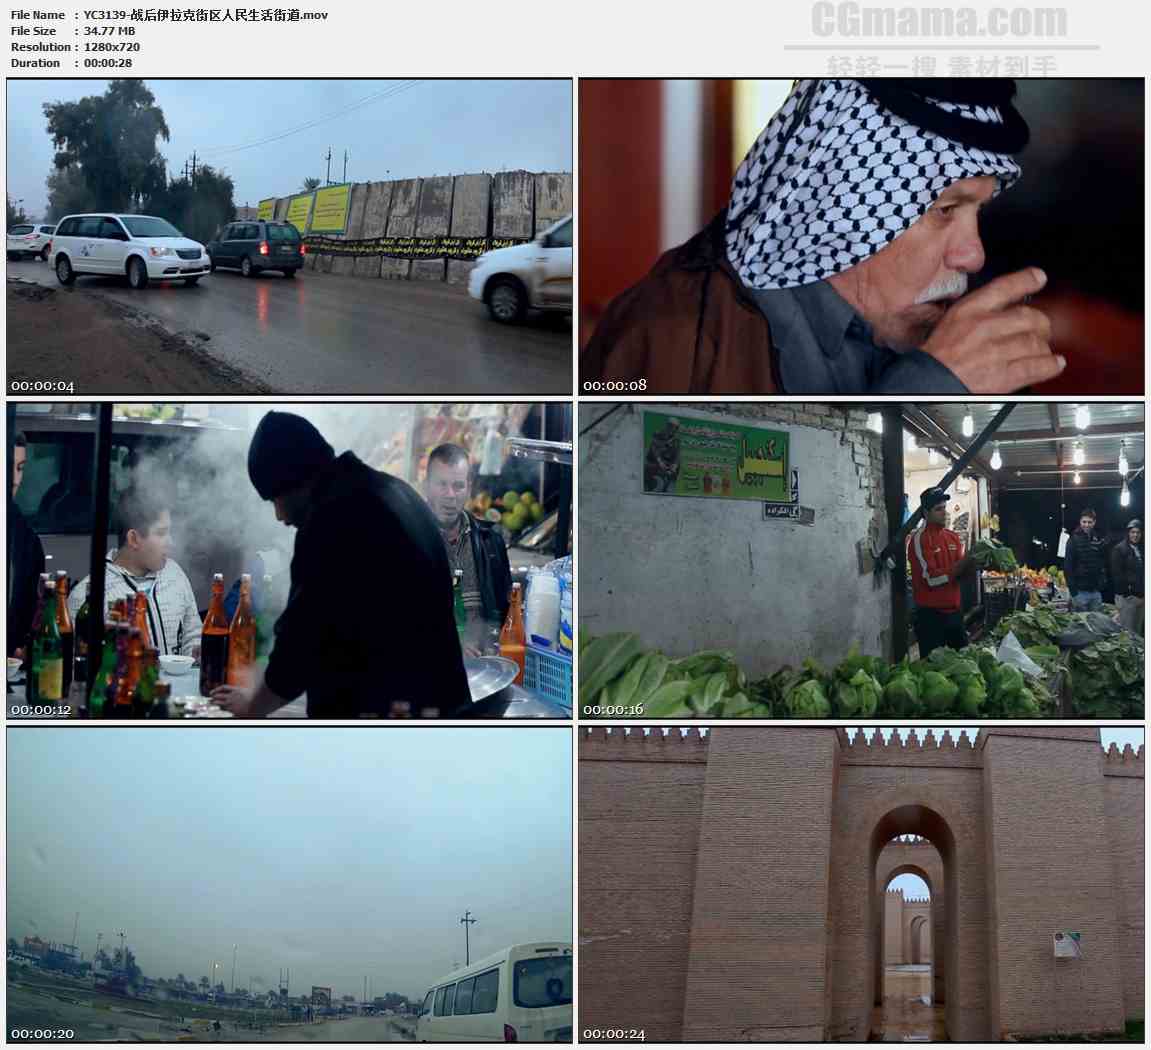 YC3139-战后伊拉克街区人民生活街道高清实拍视频素材